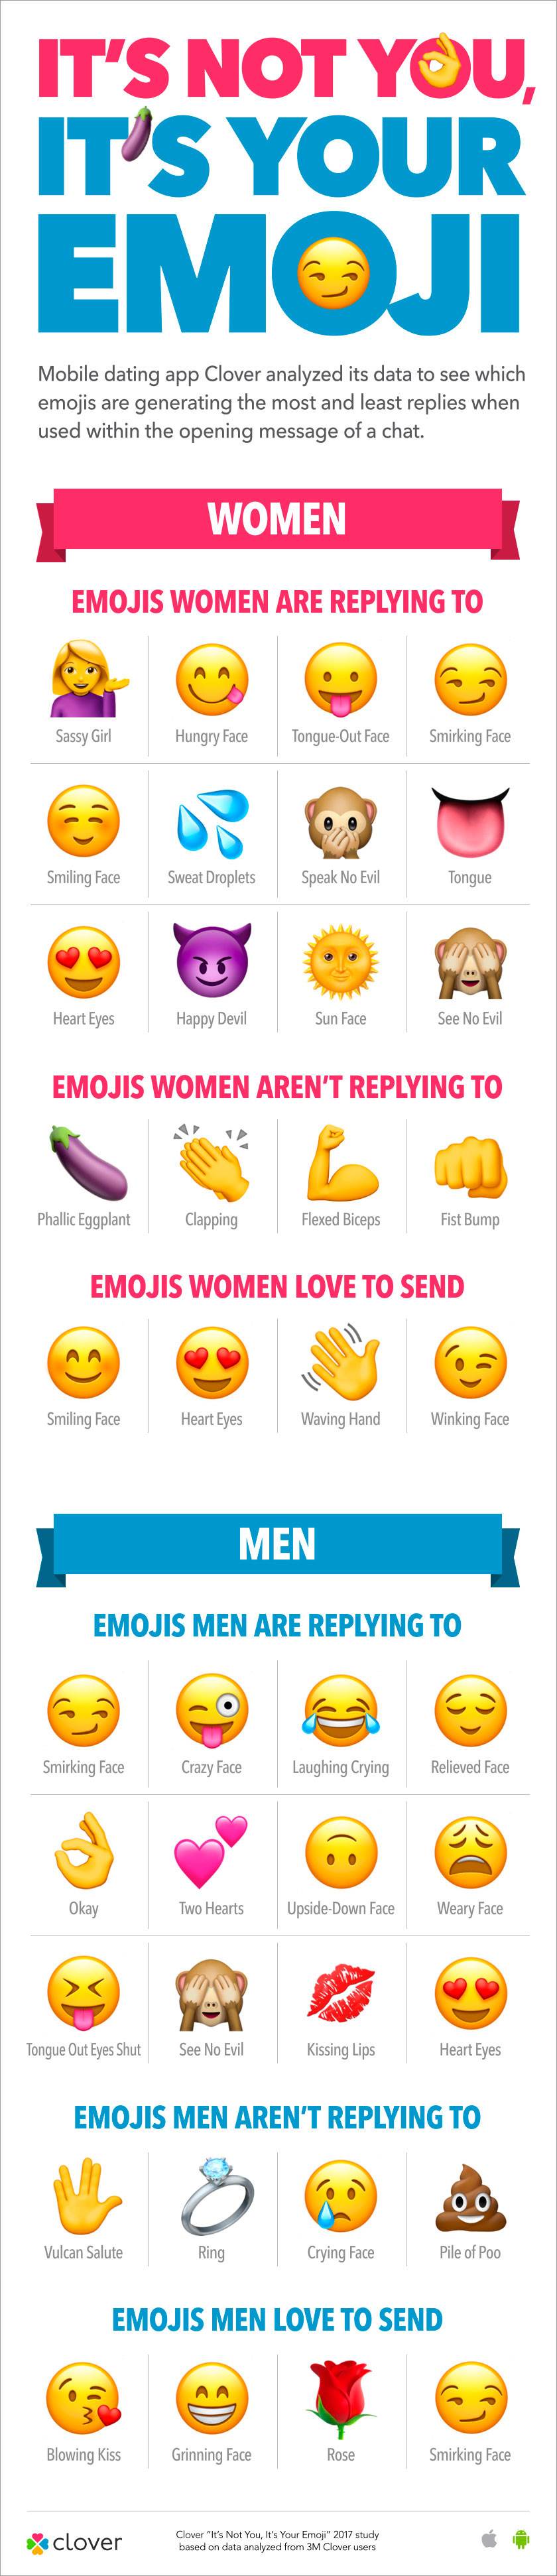 emojis er vejen frem, hvis du vil score - ALT.dk